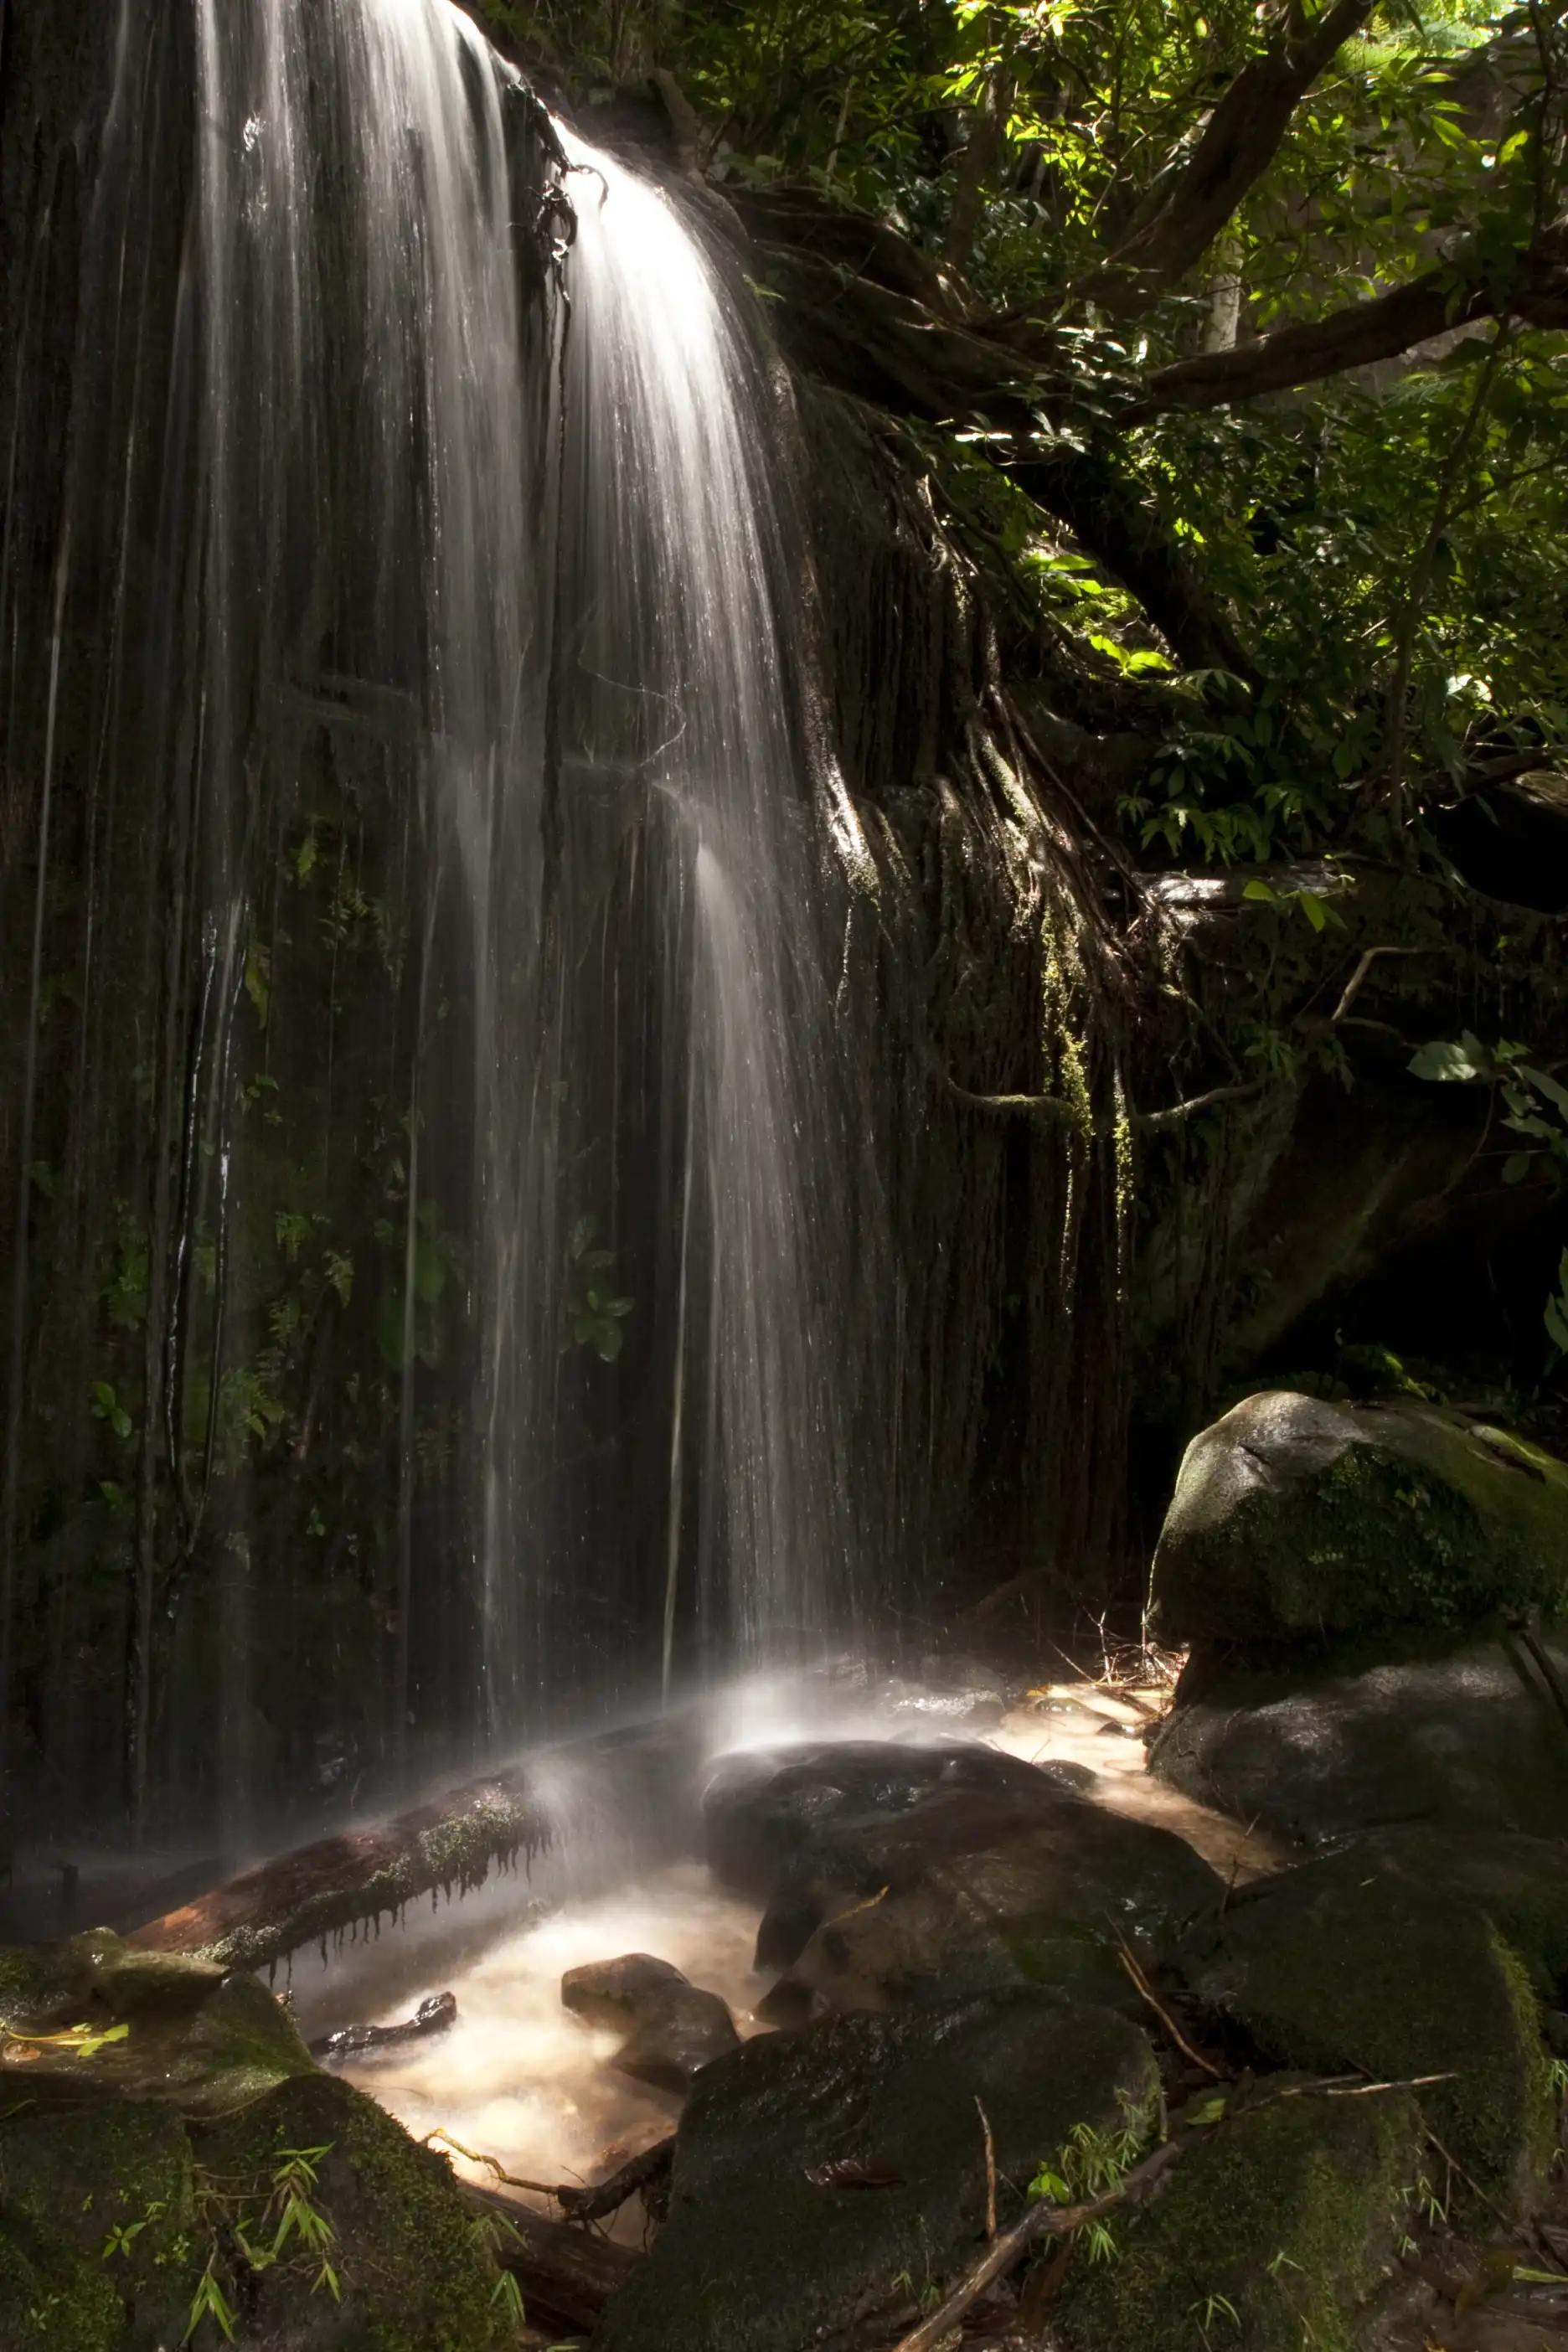 Waterfall at Phu Phan National Park, Thailand